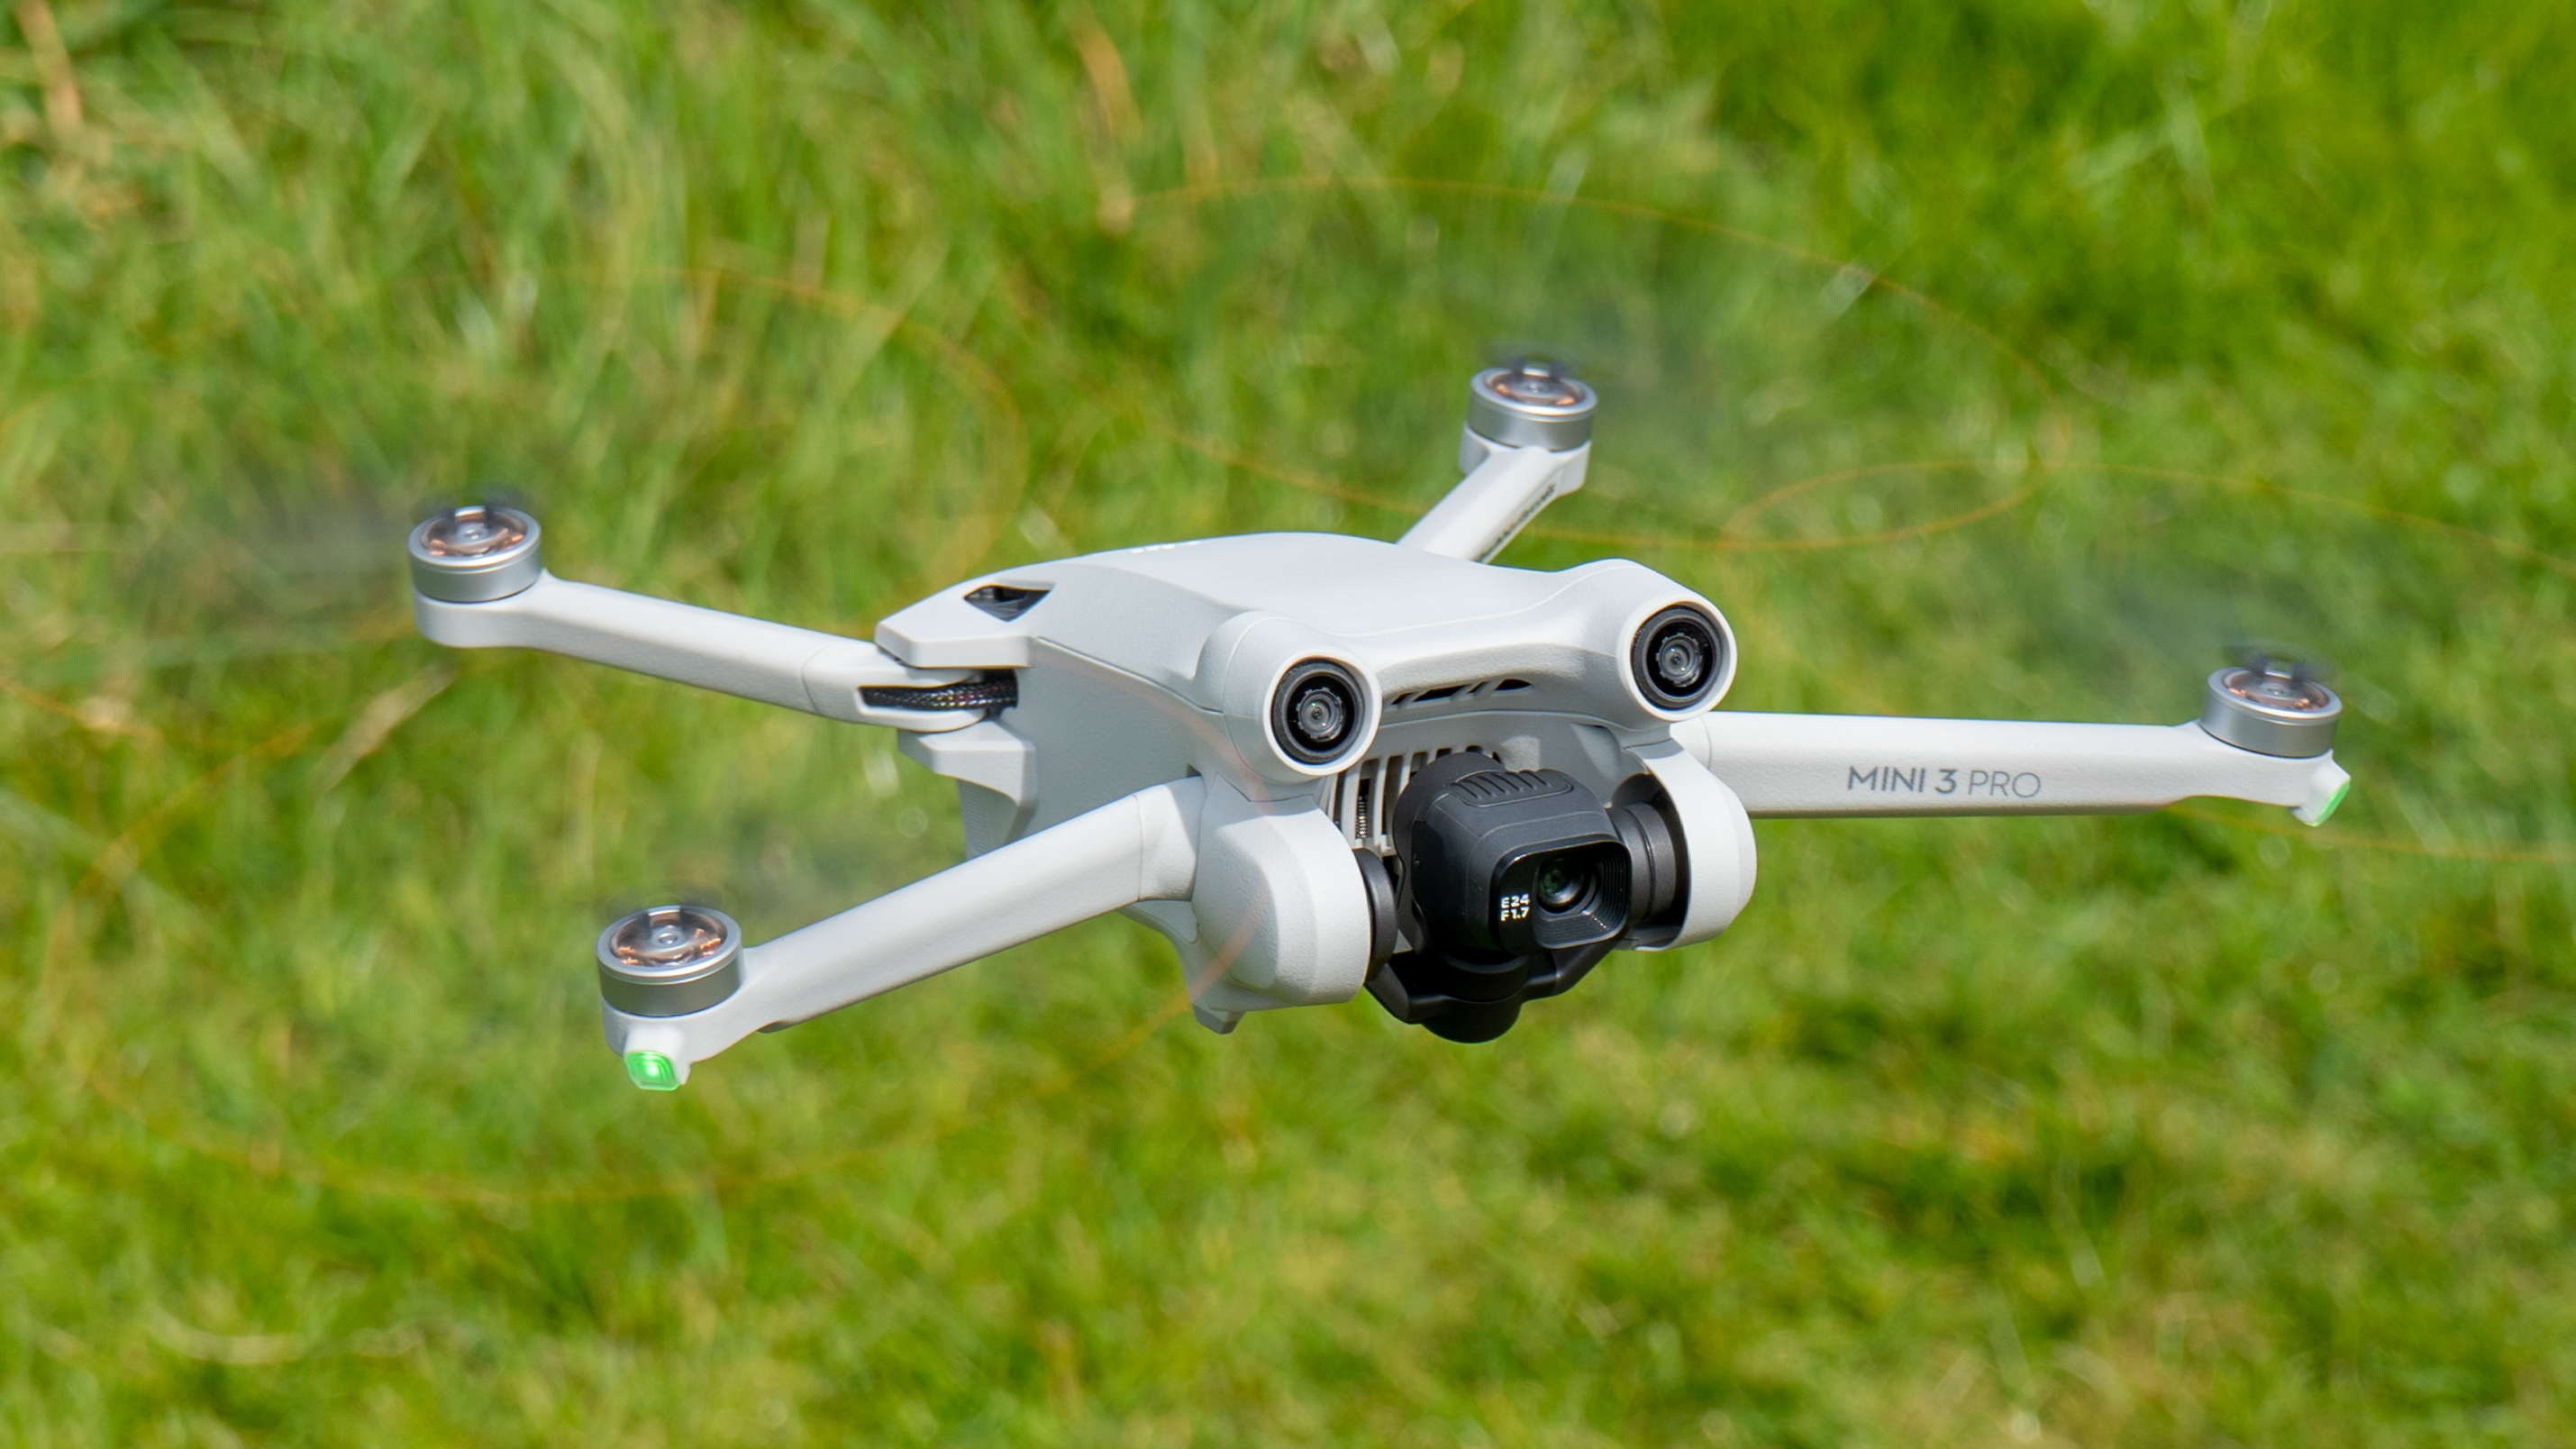 Best drones for beginners: DJI Mini 3 Pro